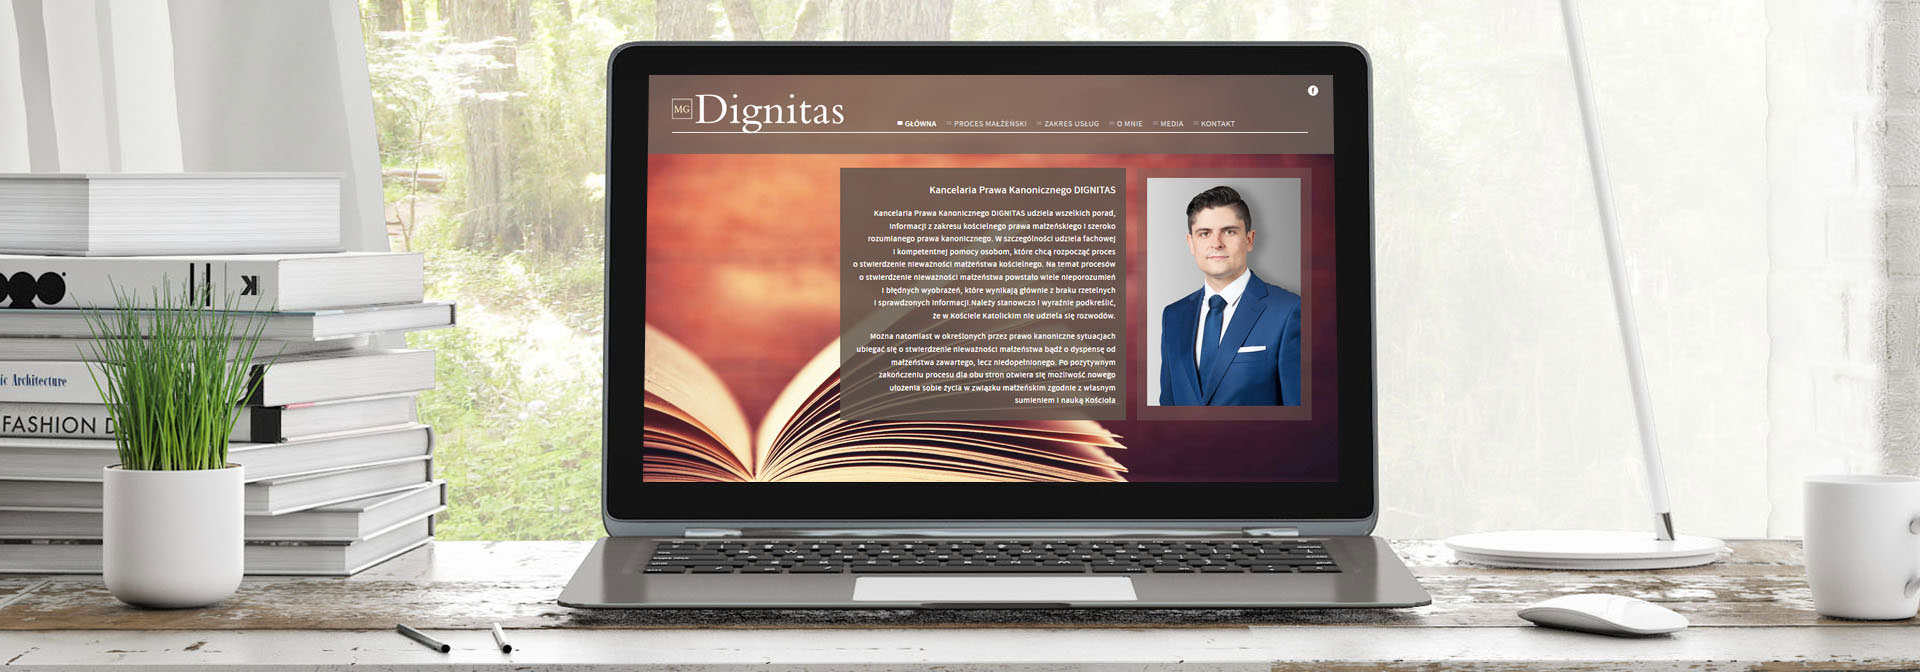 Main page of Dignitas has photo of Maciej Góral